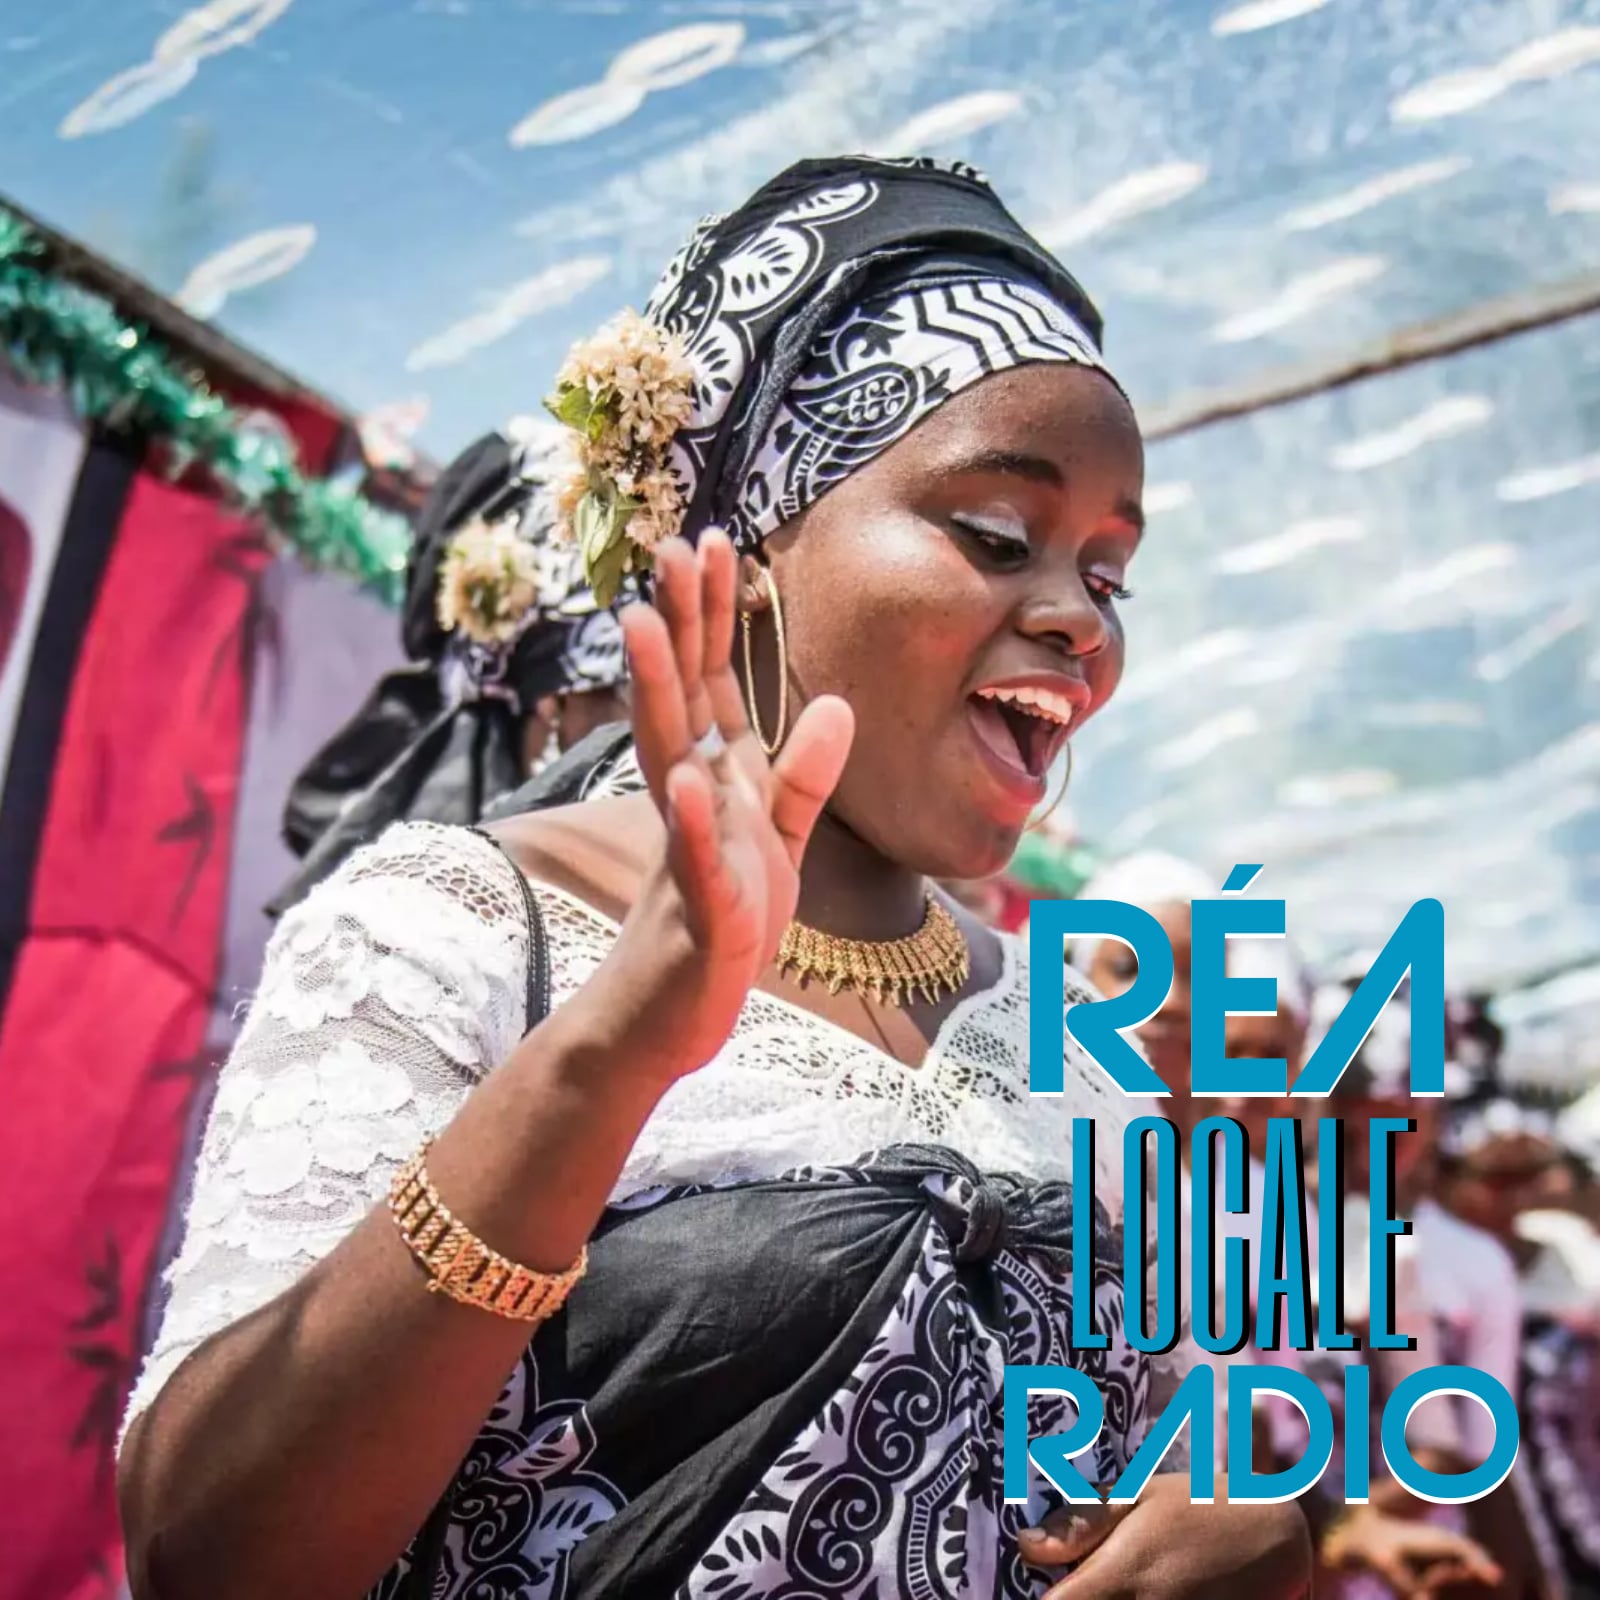 Réa Locale Radio